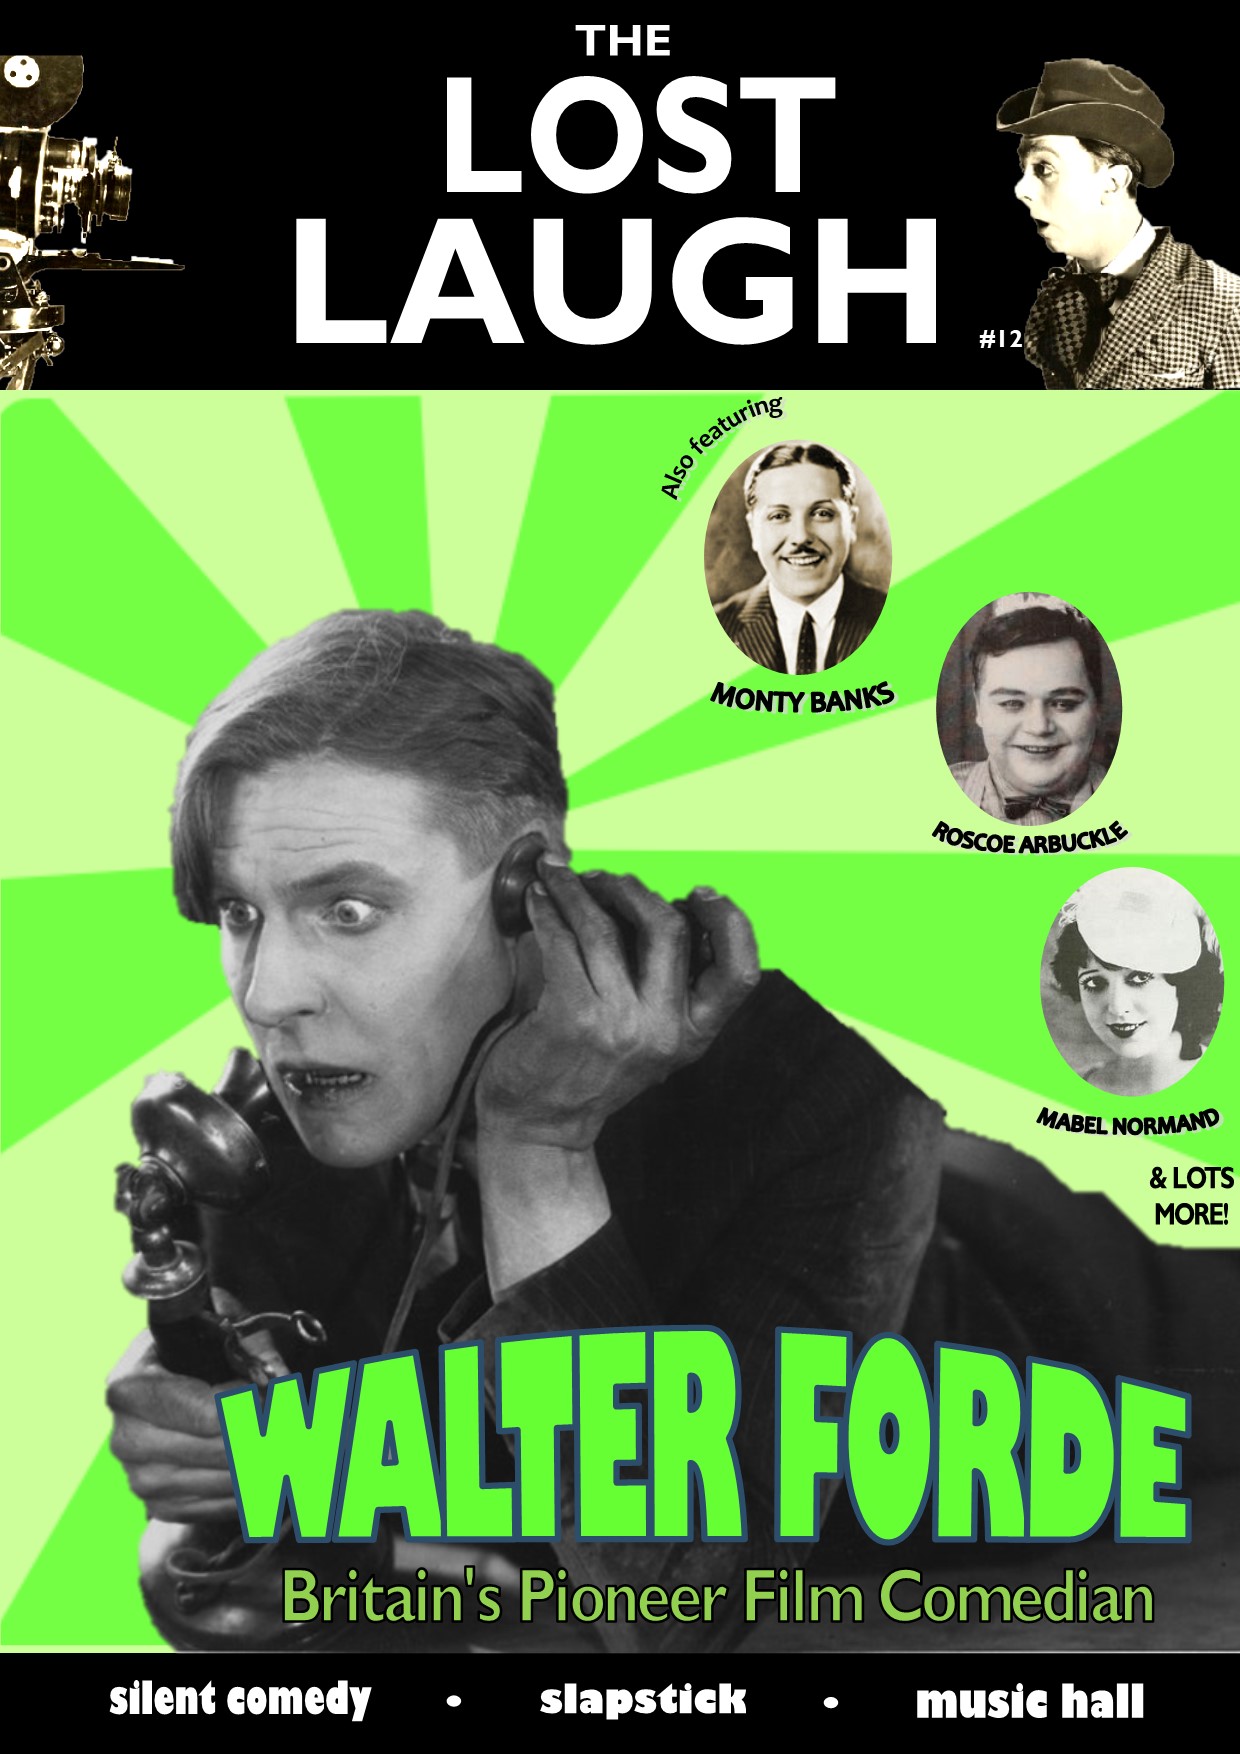 LOST LAUGH #12 COVER v2